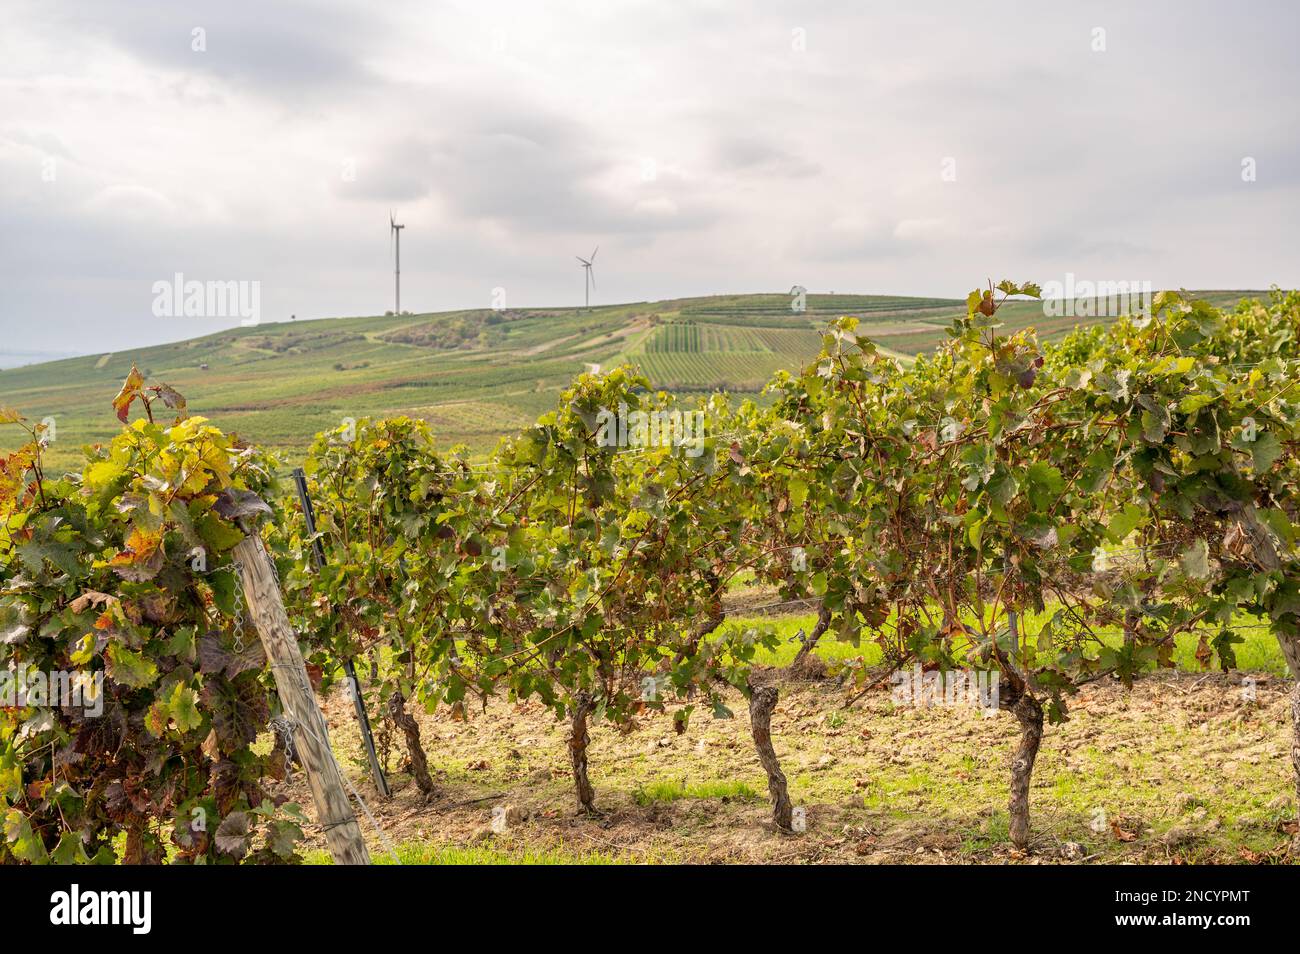 Weinberg mit Rebpflanzen in der erntesaison september, Pflanzen auf einem Hügel, Windturbinen im Hintergrund, mainz zornheim, deutschland Stockfoto